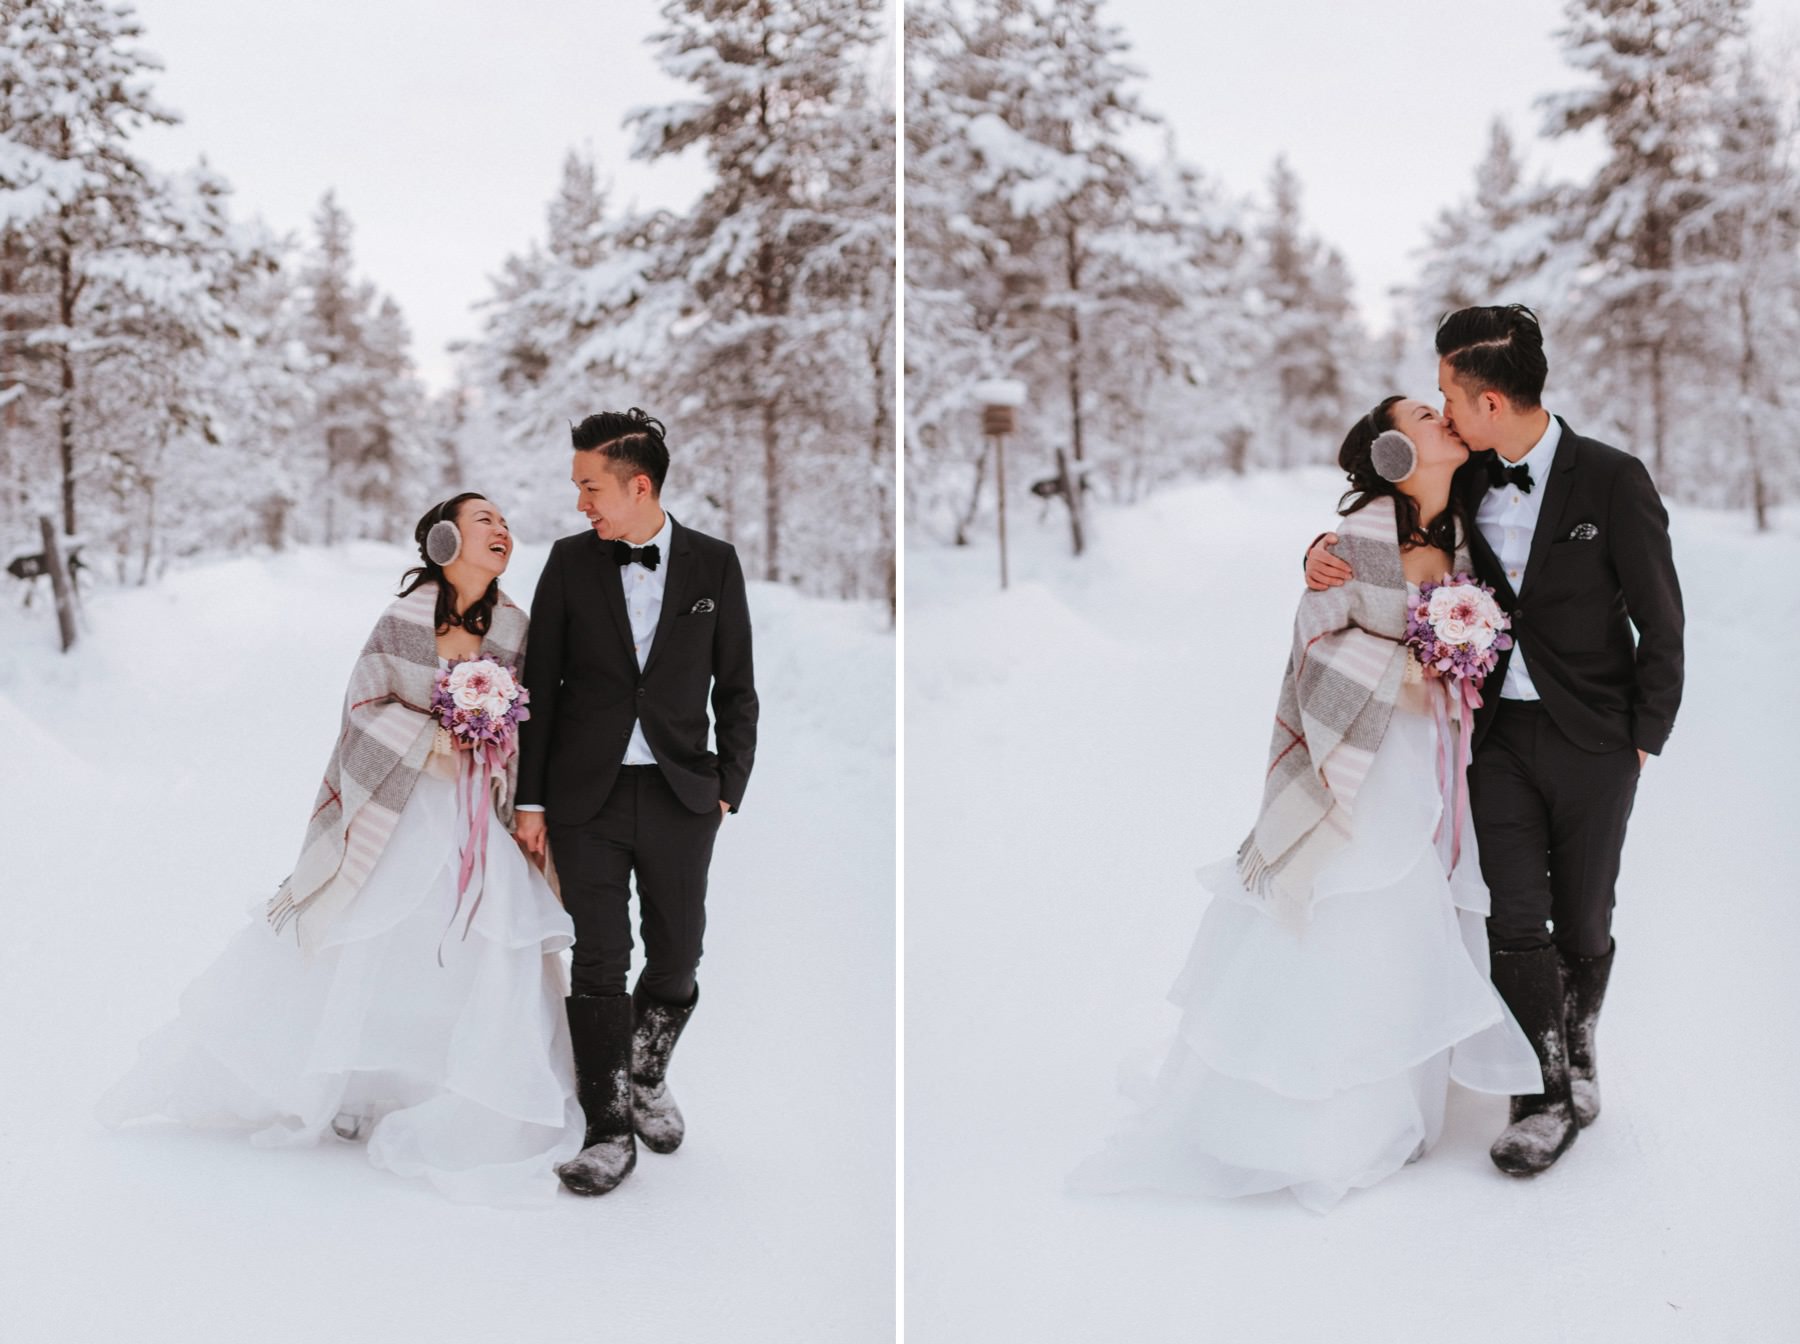 Kakslauttanen Arctic Resort Wedding